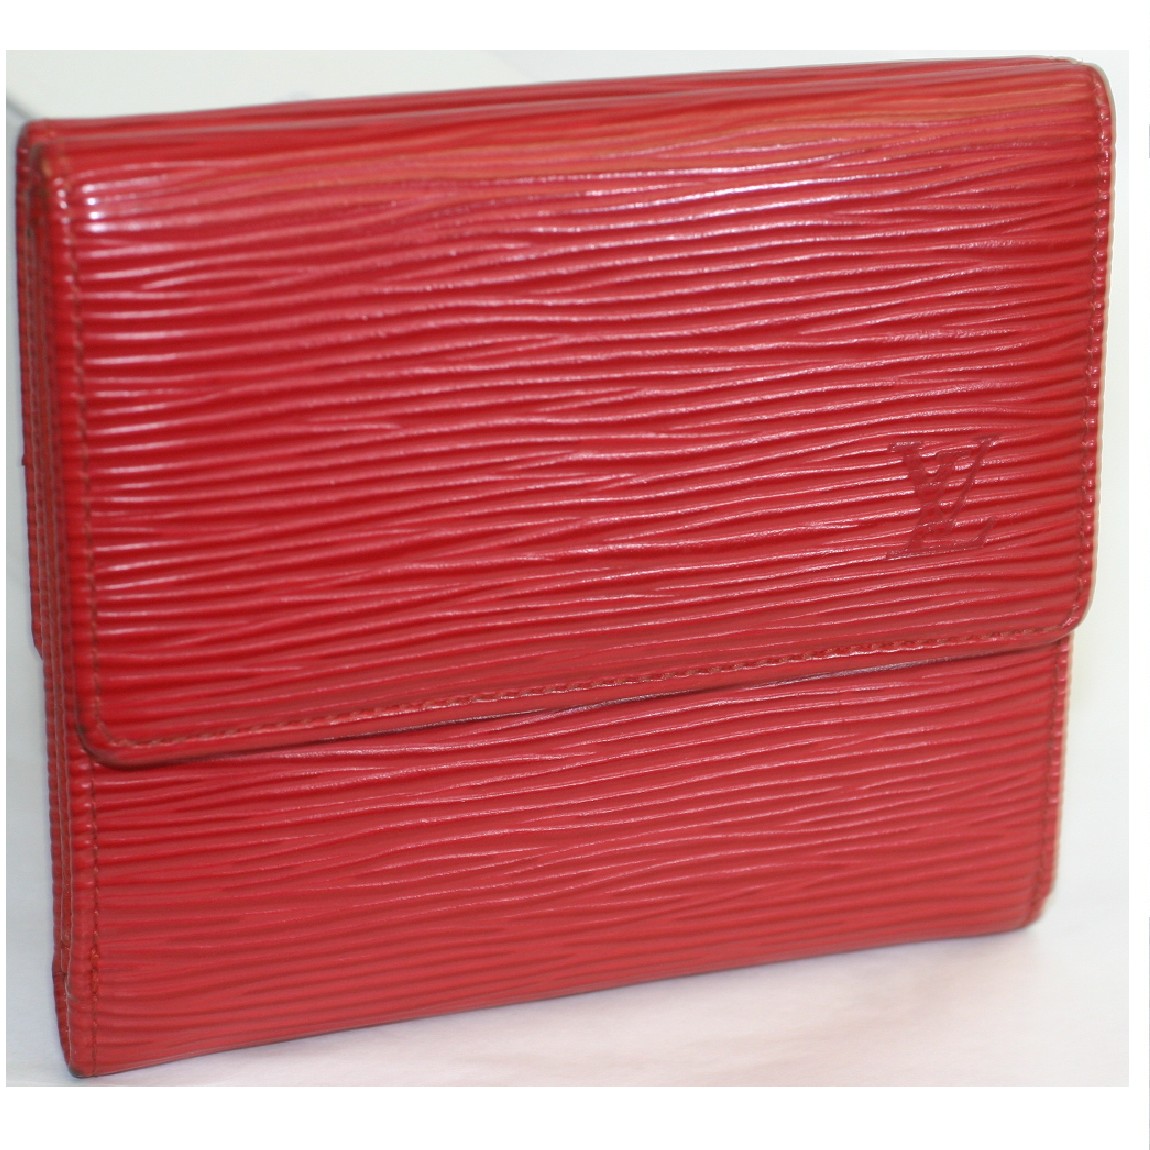 【中古】本物美品L/Vエピの赤いWホックの財布M63487 サイズW11H10D2cm ○C14-143